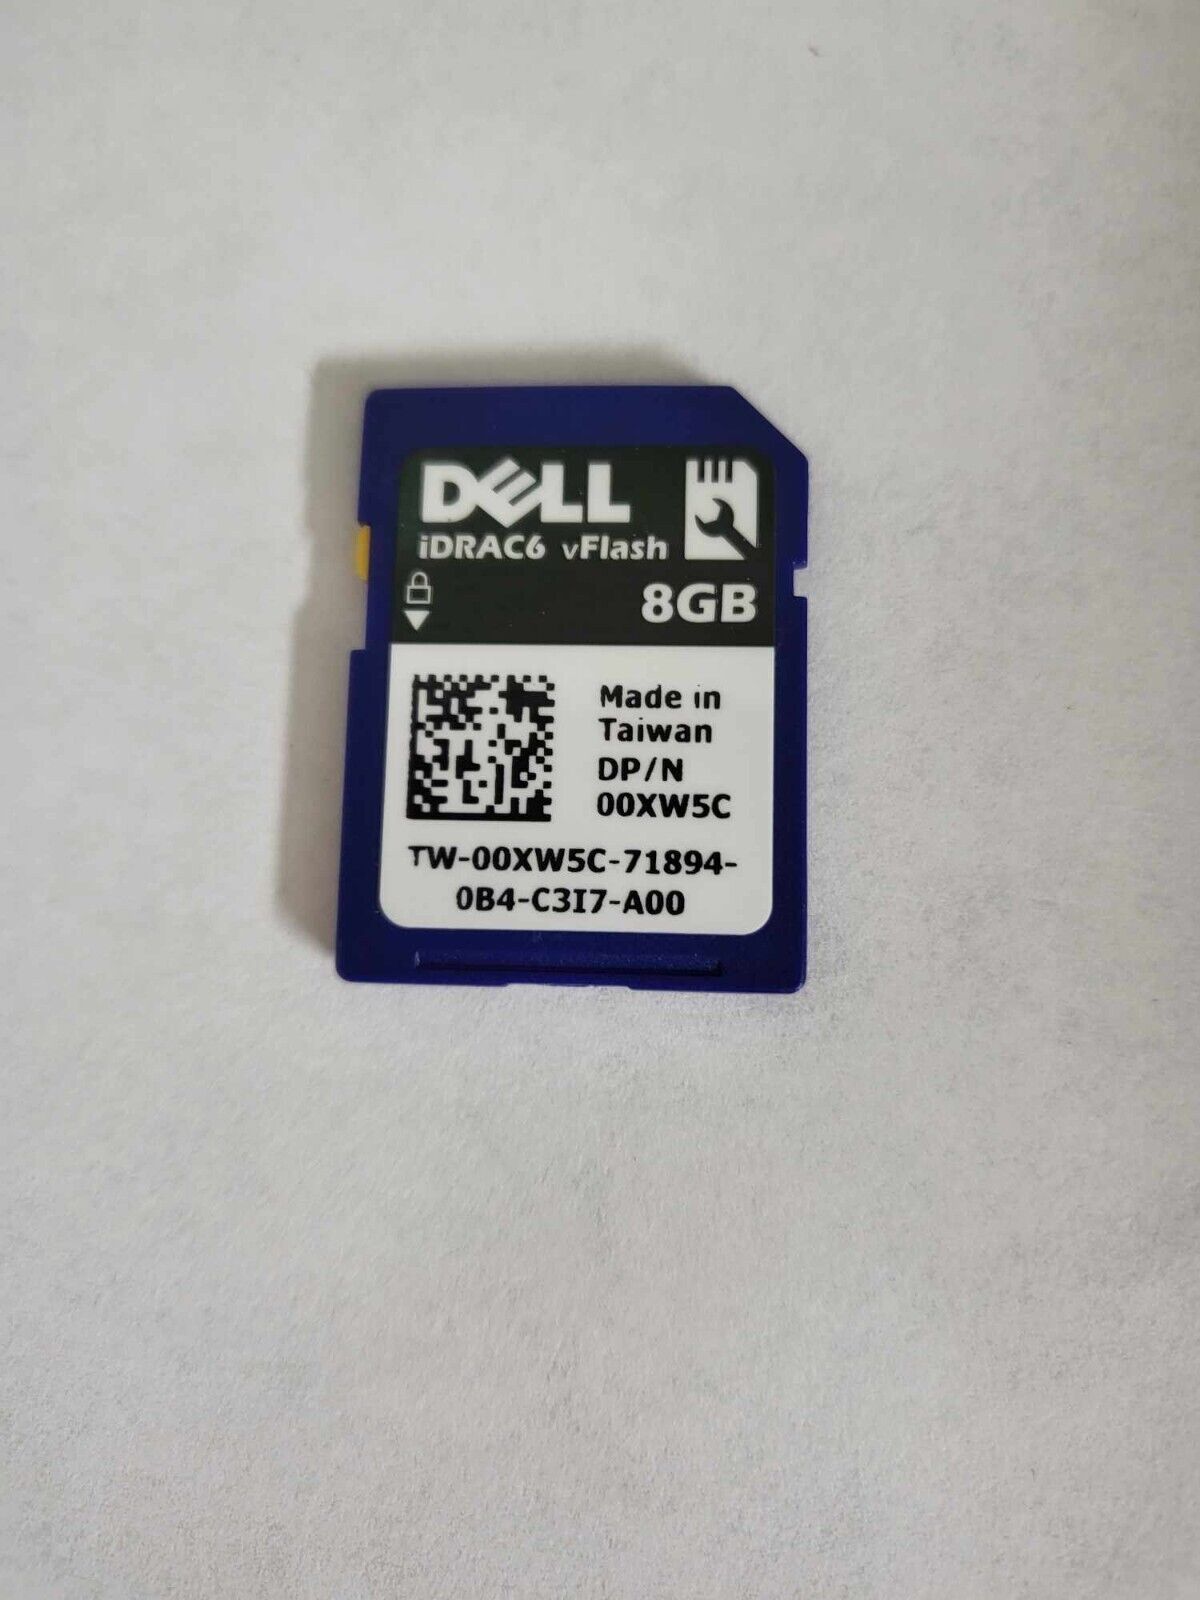 OEM Dell iDRAC vFlash 8GB SD Card IDSDM iDRAC7 iDRAC8 iDRAC6 P/N 0XW5C